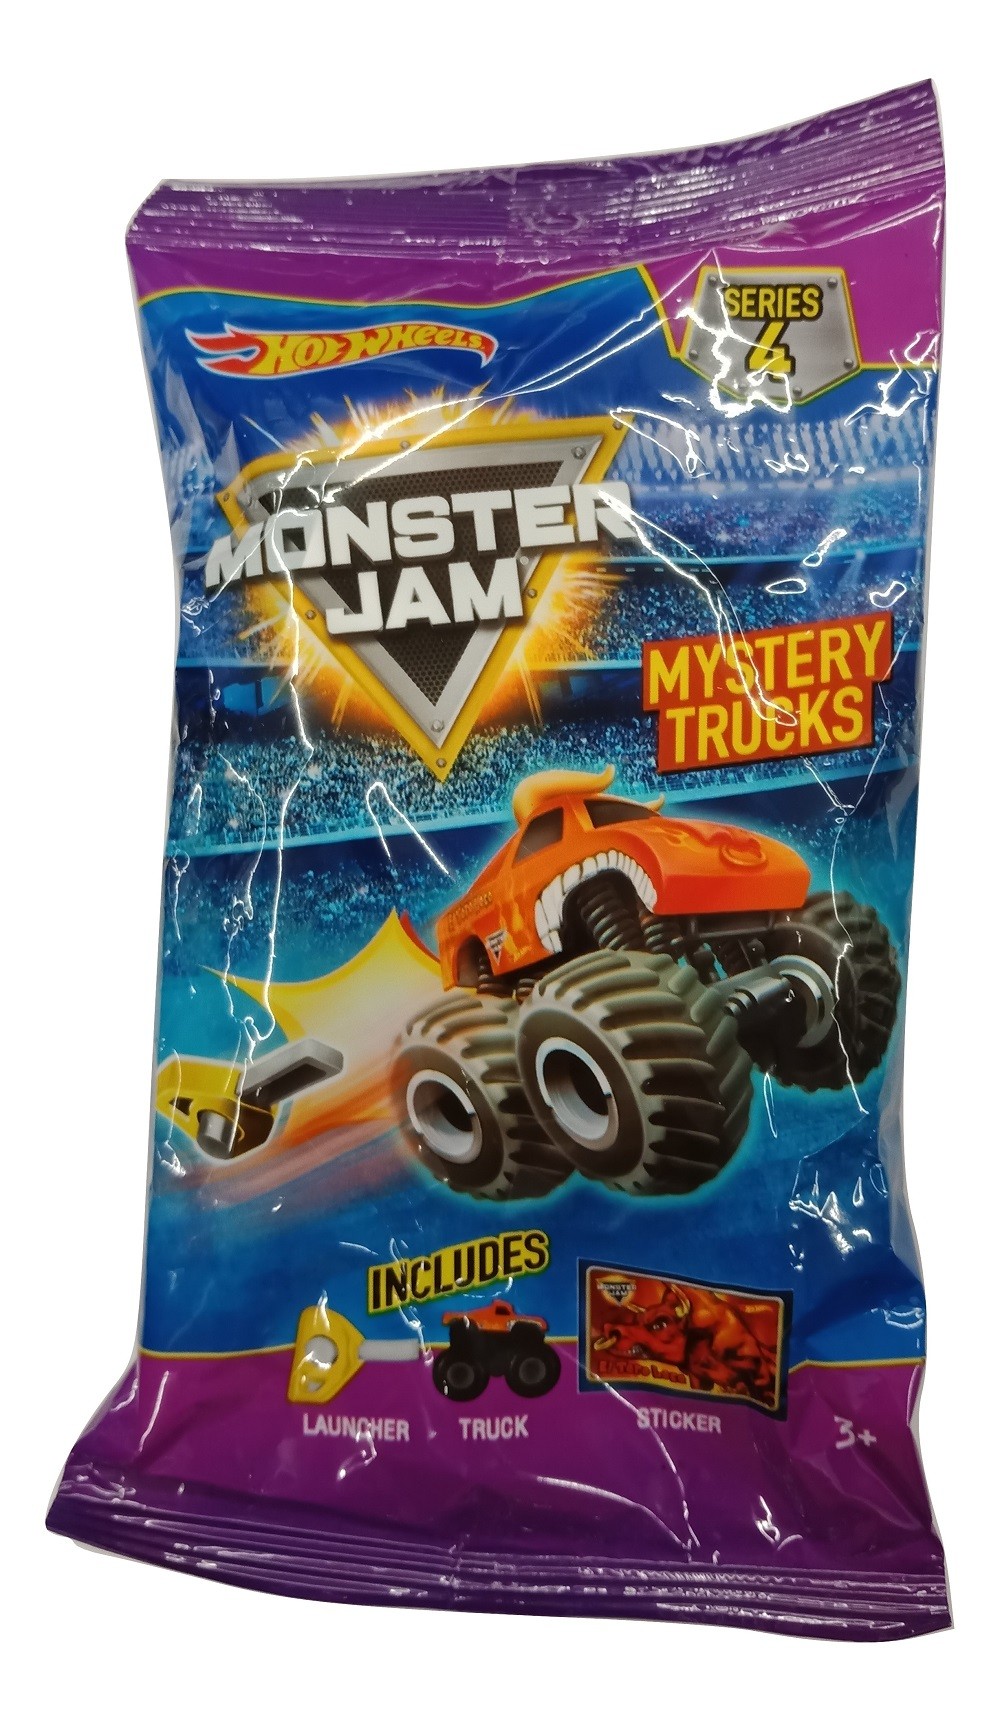 monster jam mystery trucks series 4 codes